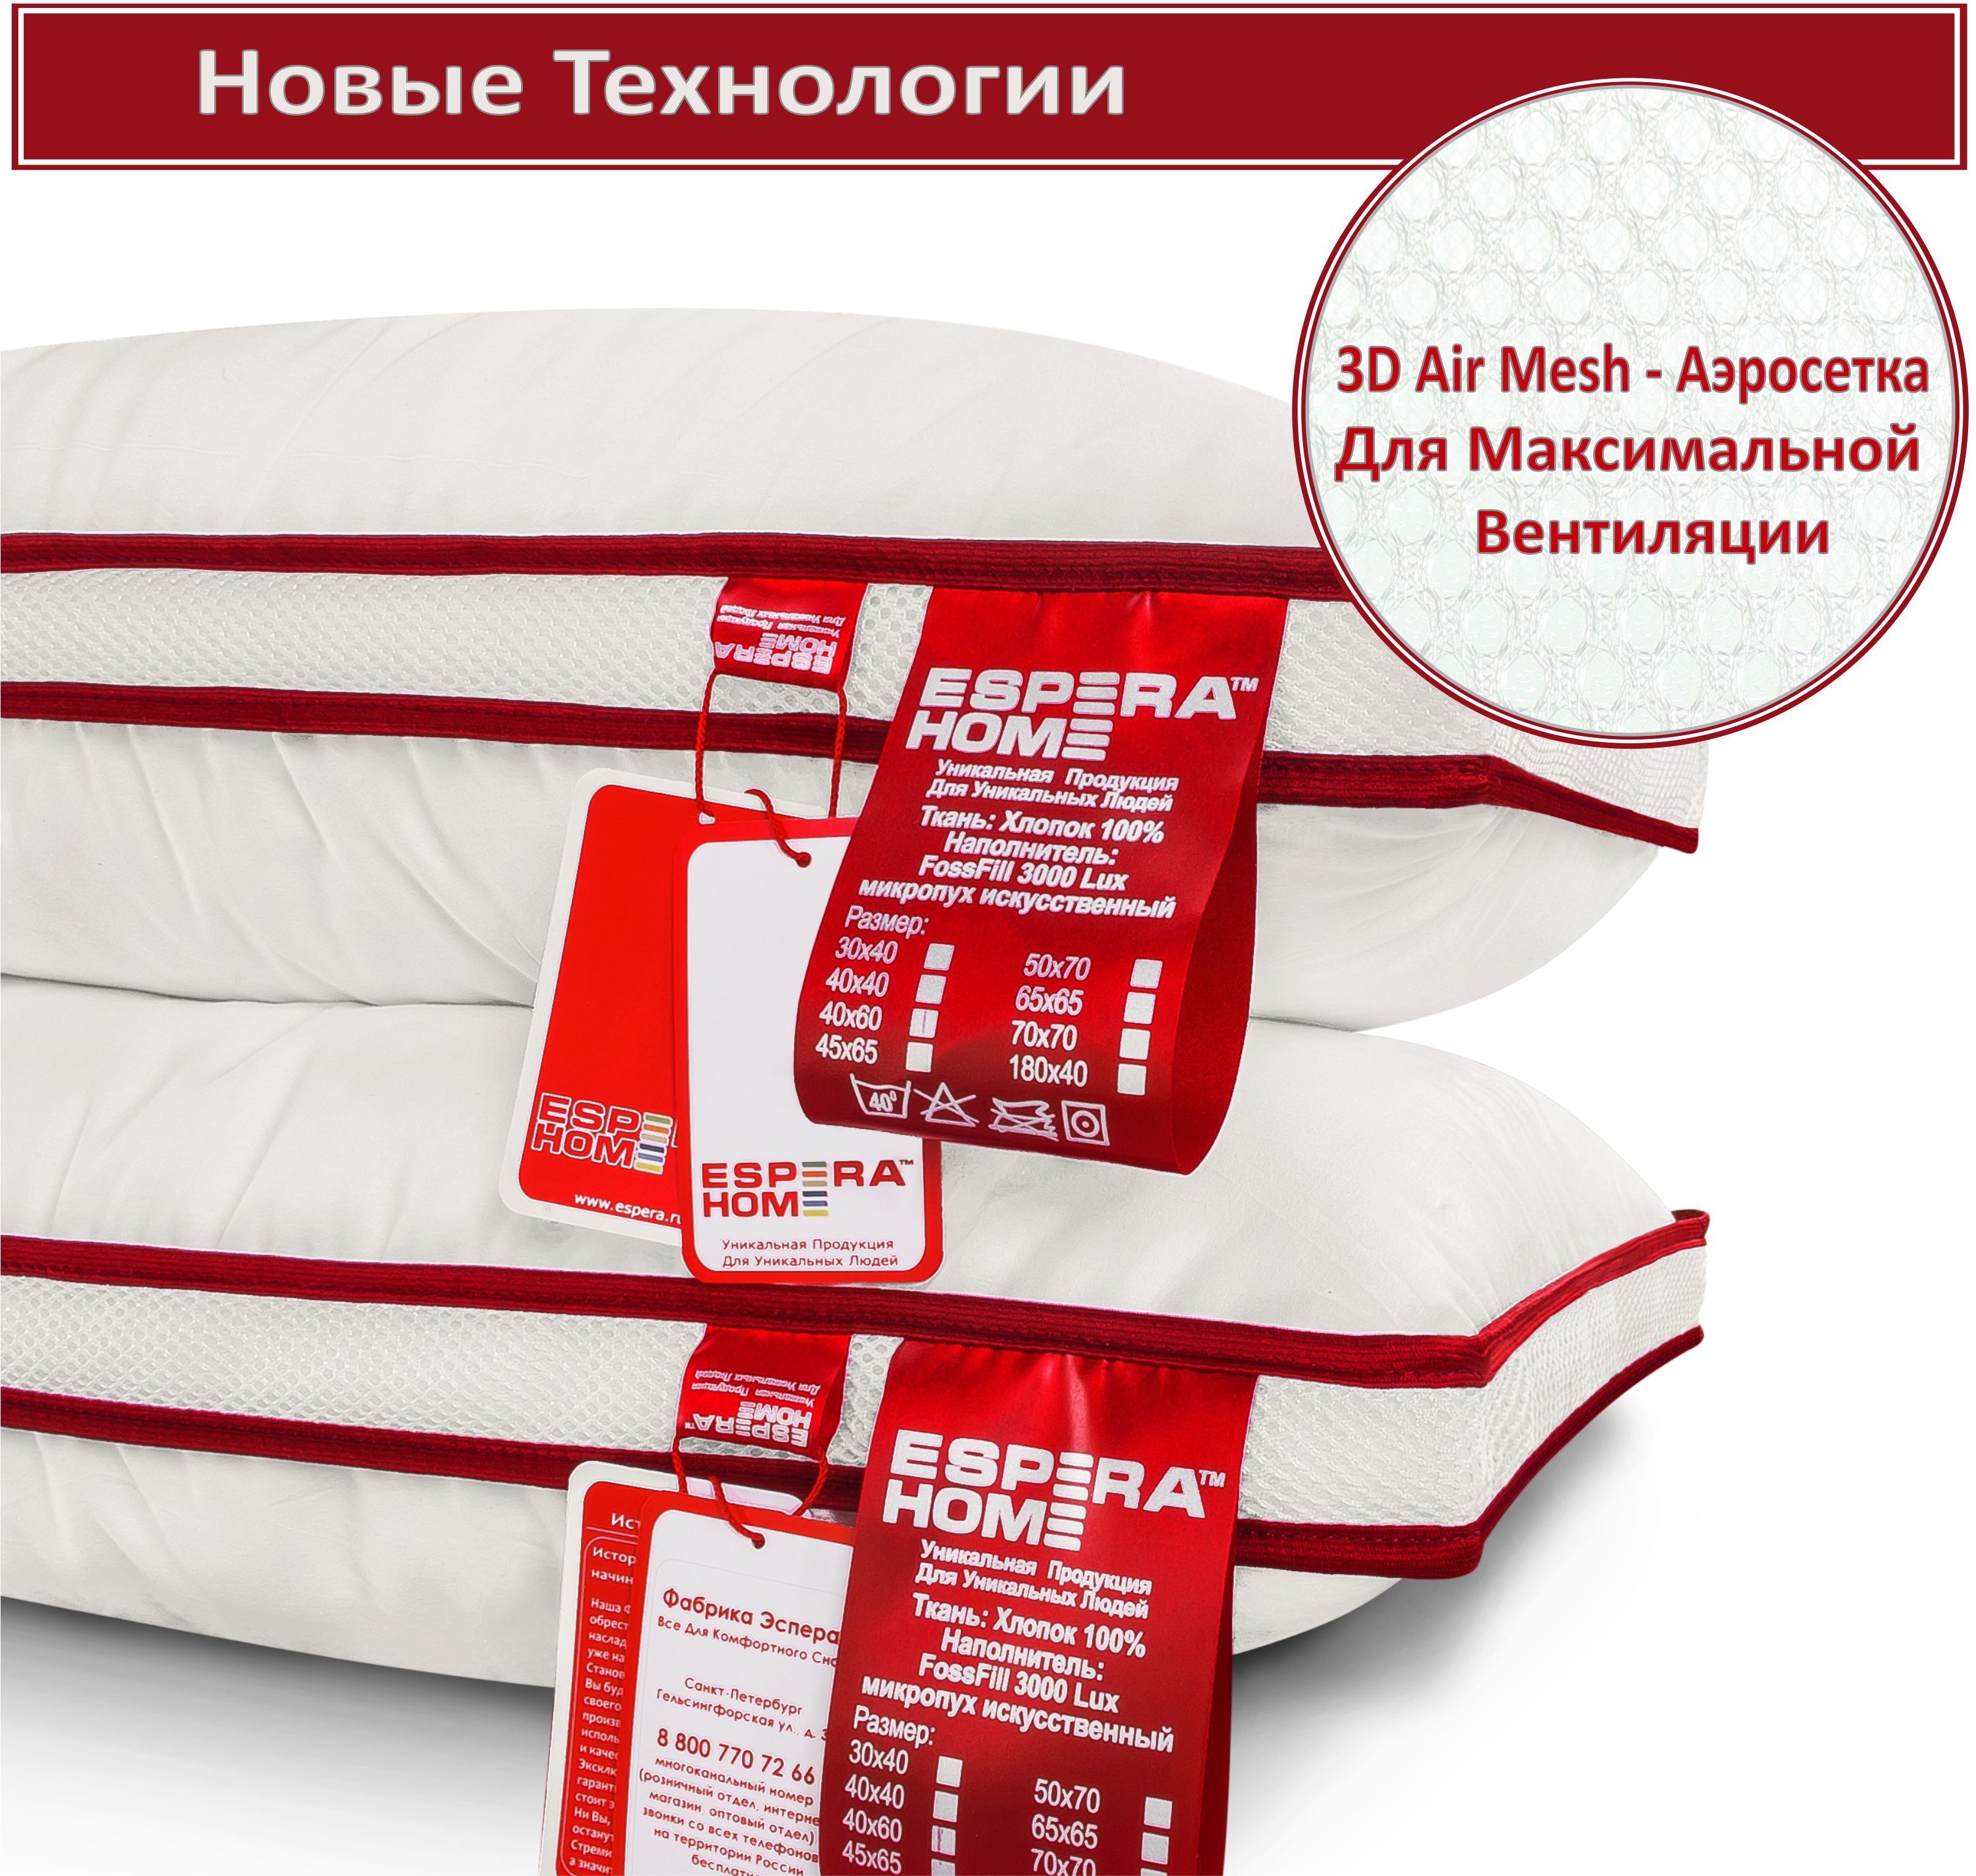 Купить подушку Espera Comfort 3d 50X70 от производителя со скидкой